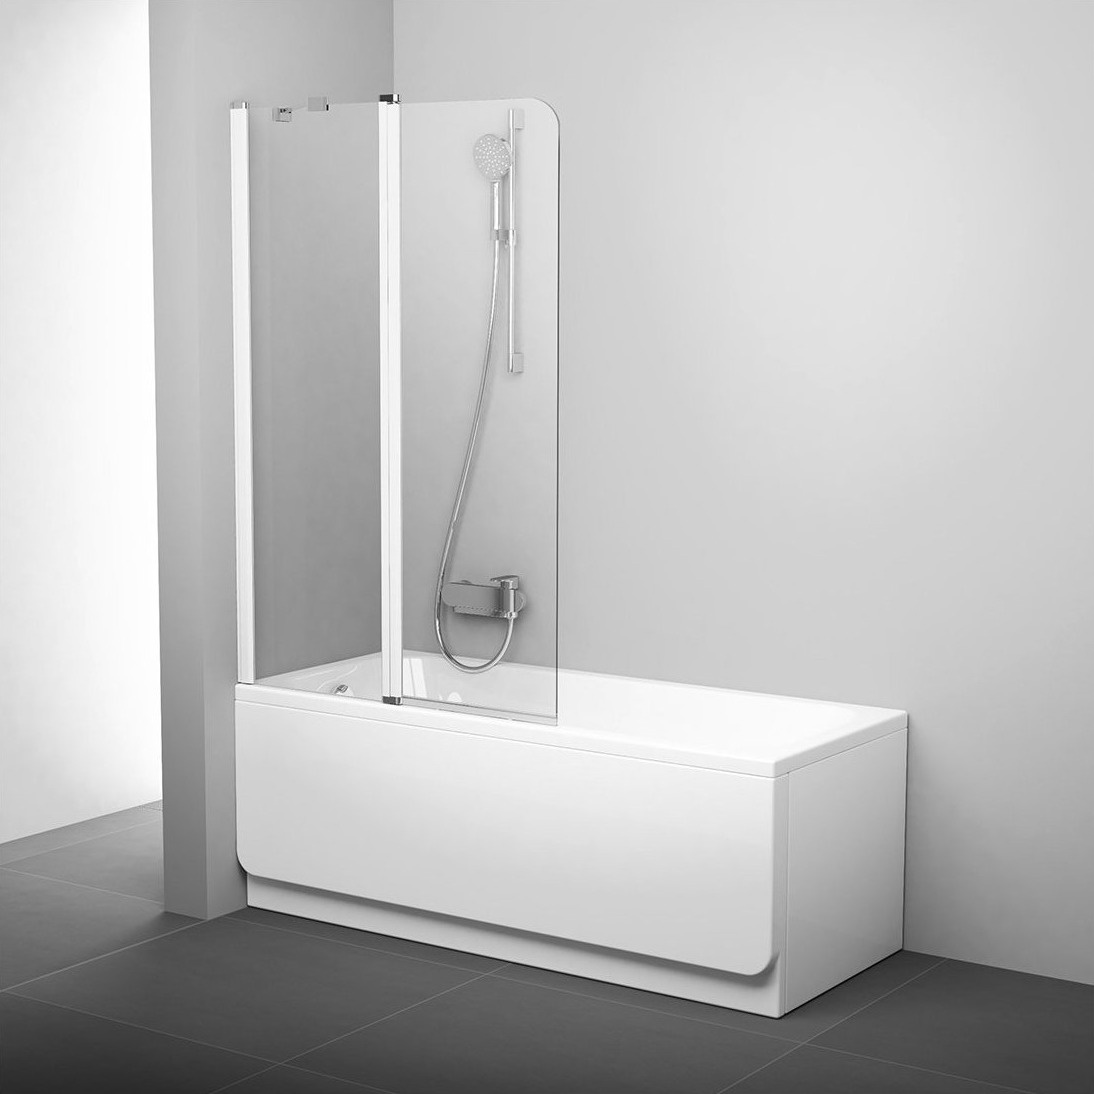 Шторка стеклянная для ванны двухсекционная распашная 150x99см RAVAK CHROME CVS2-100 L стекло прозрачное 6мм профиль белый 7QLA0100Z1